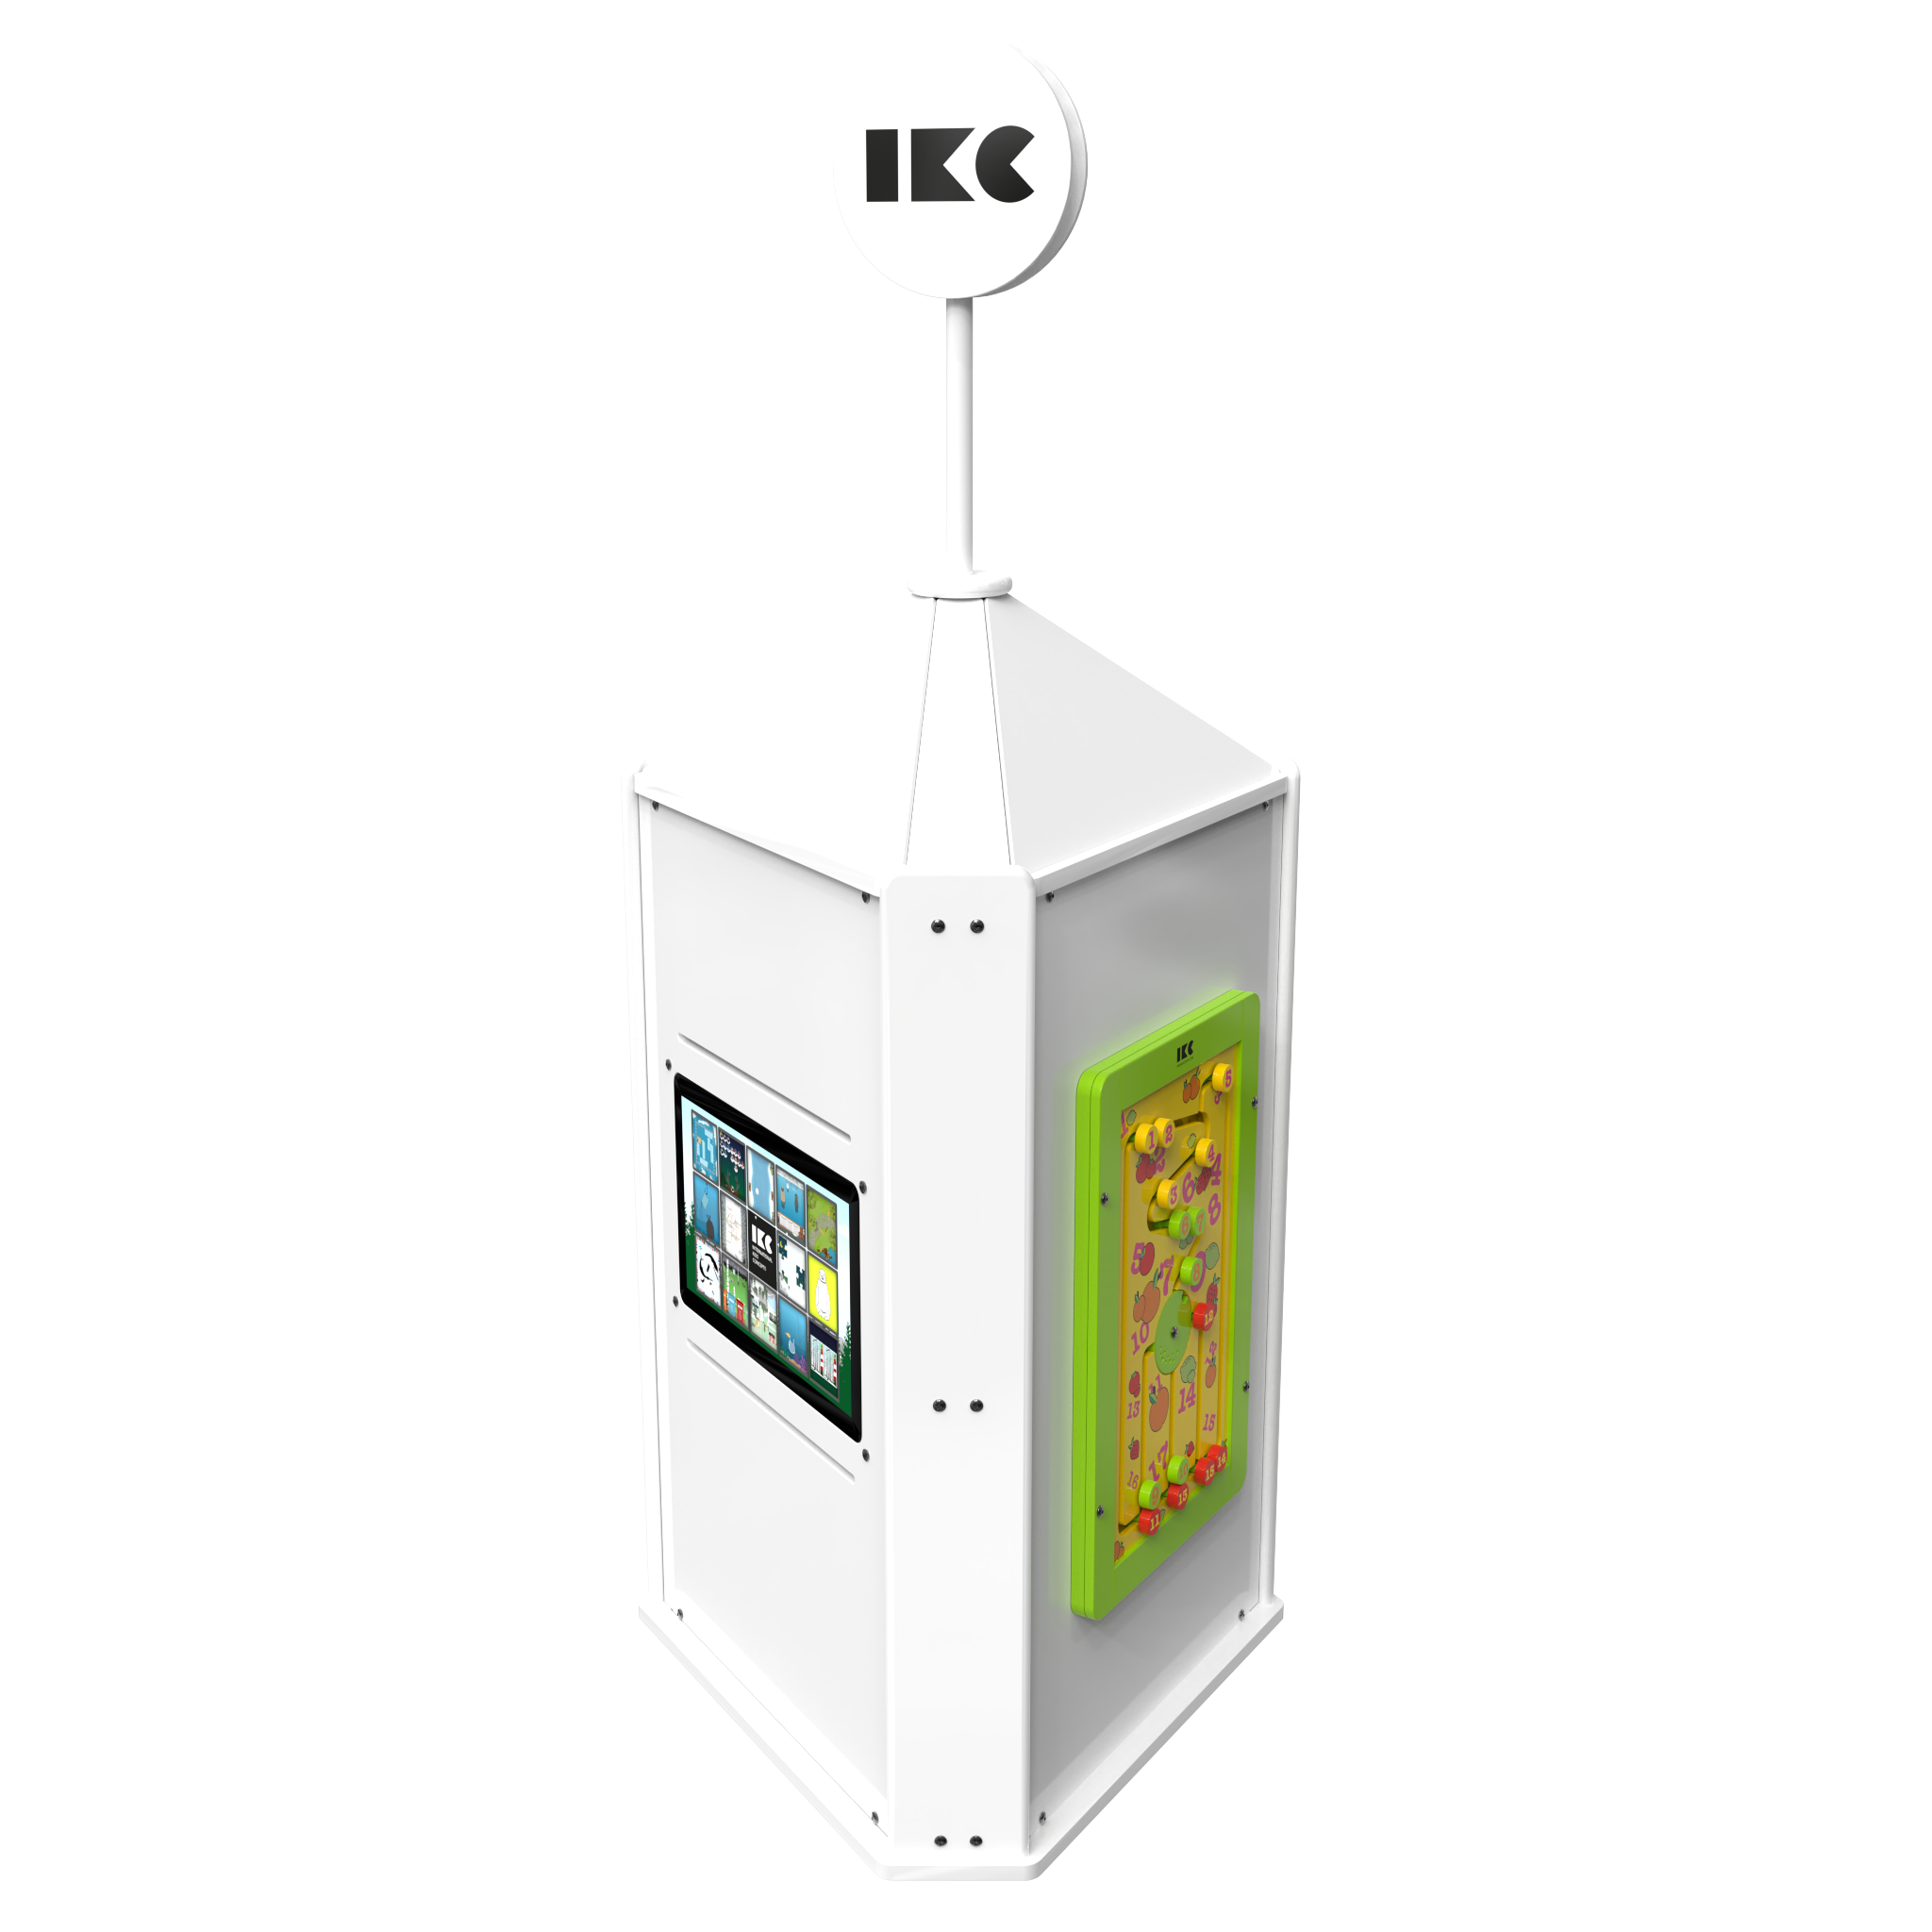 L'image montre un système de jeu interactif Playtower touch white